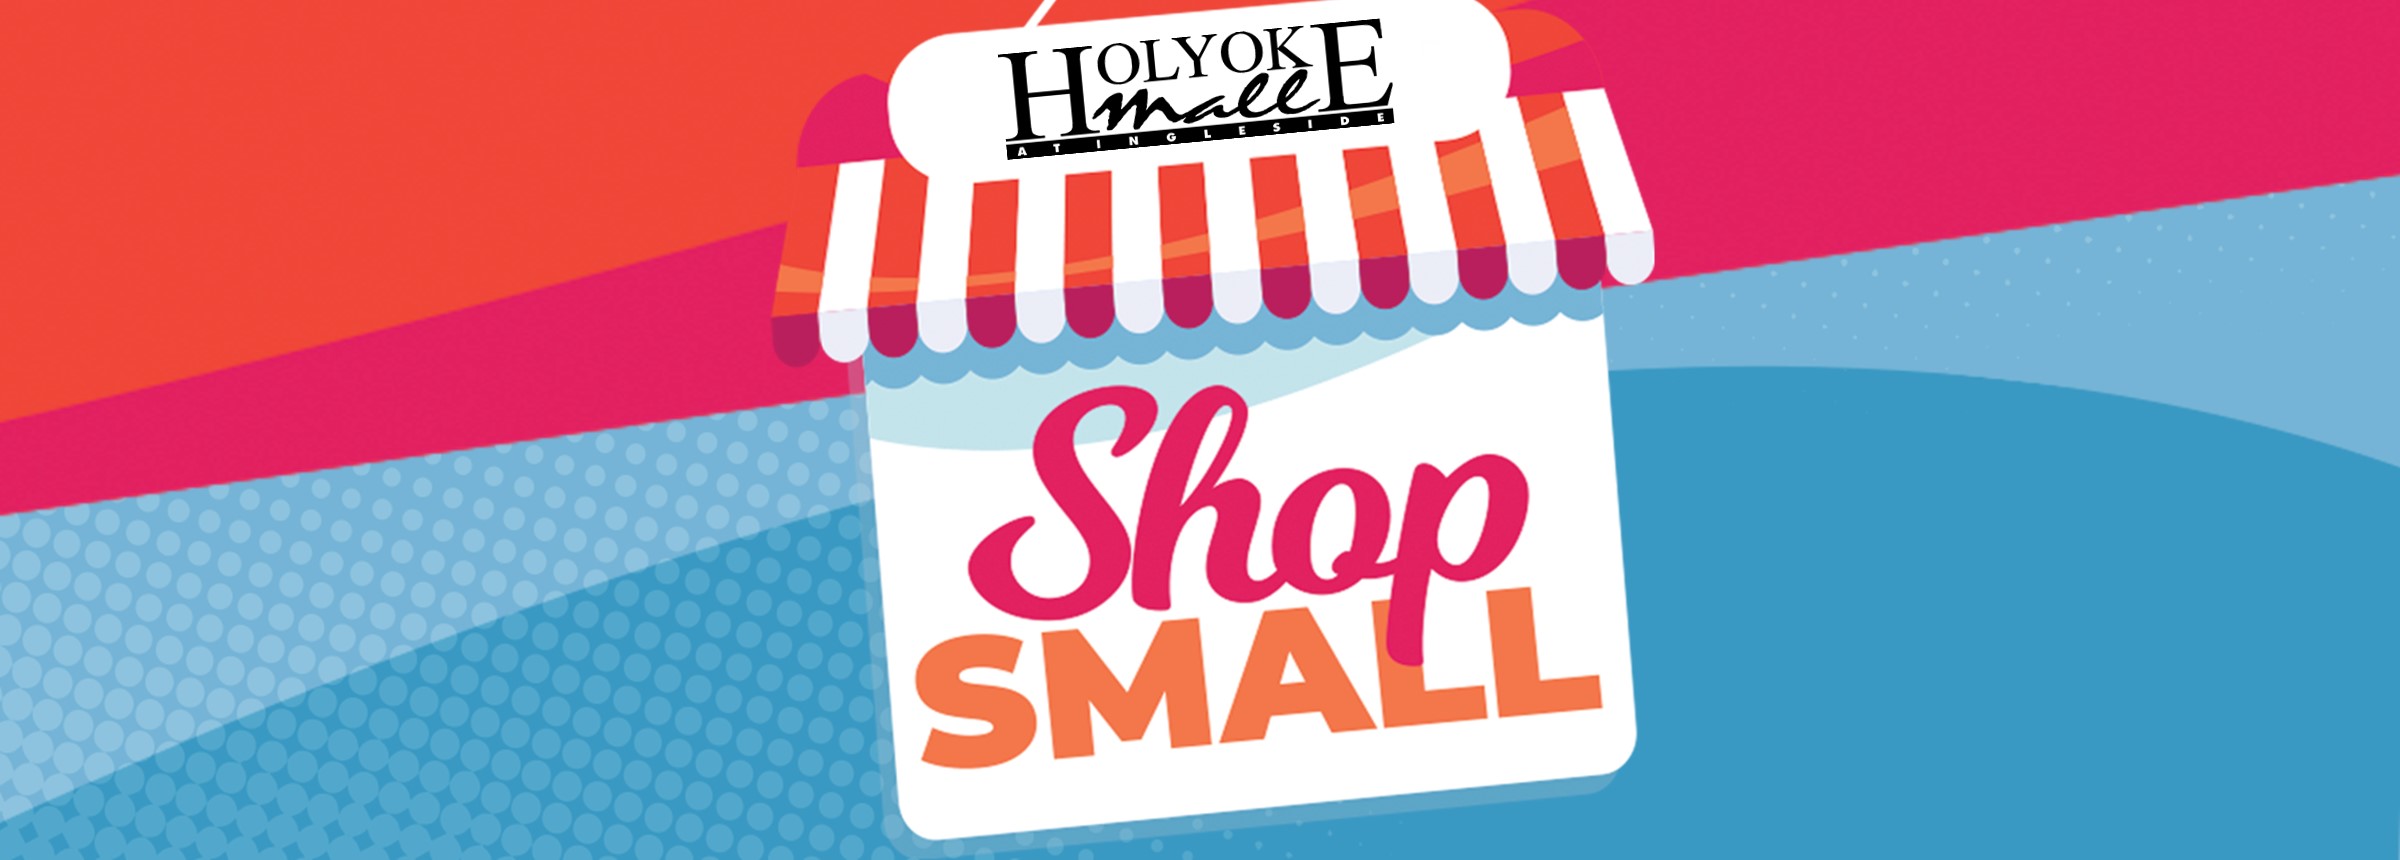 Shop Small at Holyoke Mall